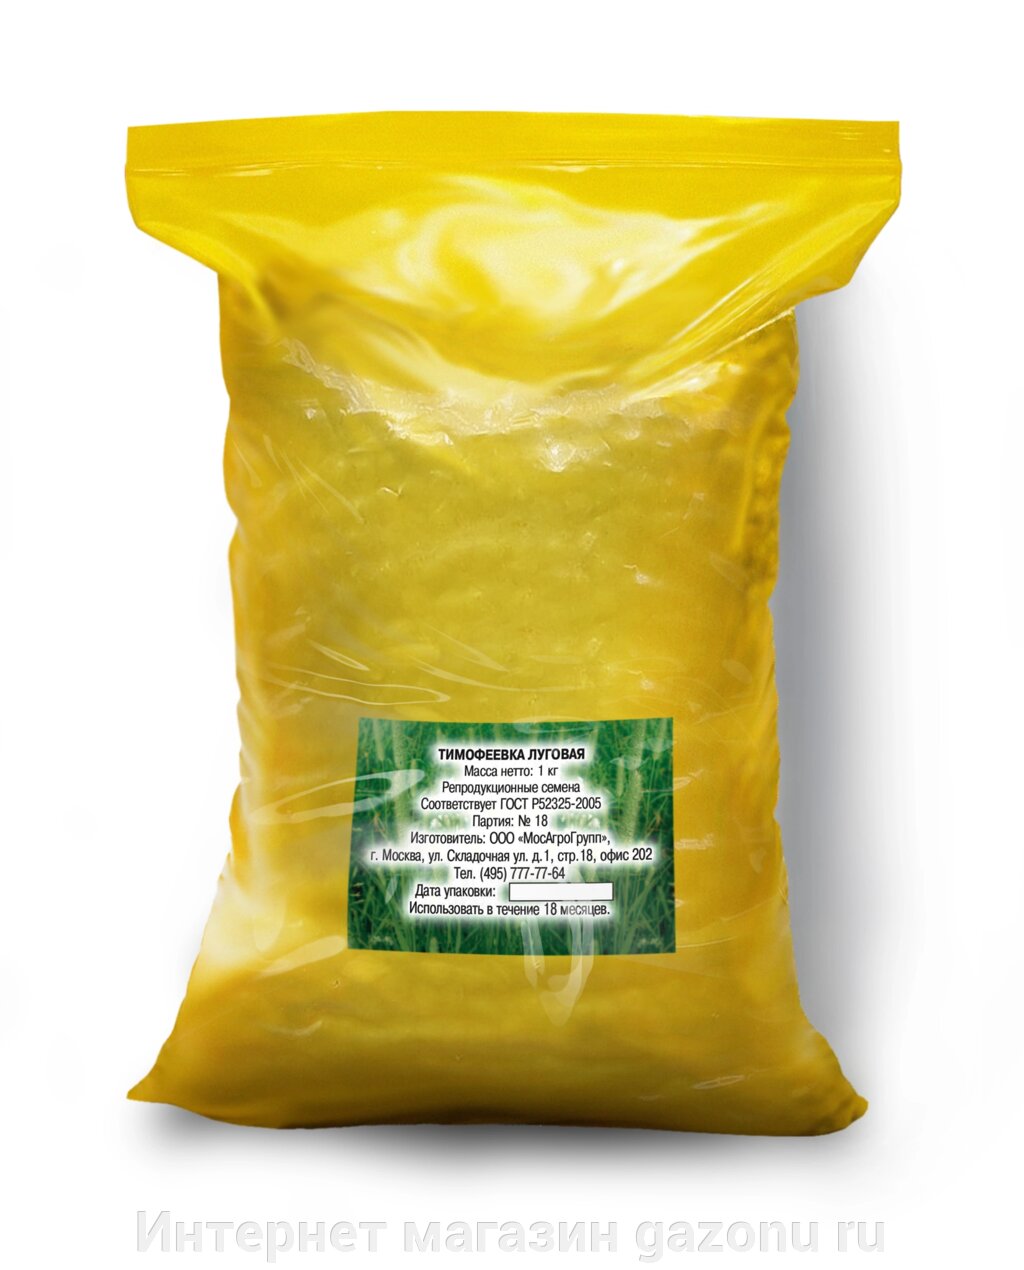 Семена тимофеевки луговой - 1 кг - обзор